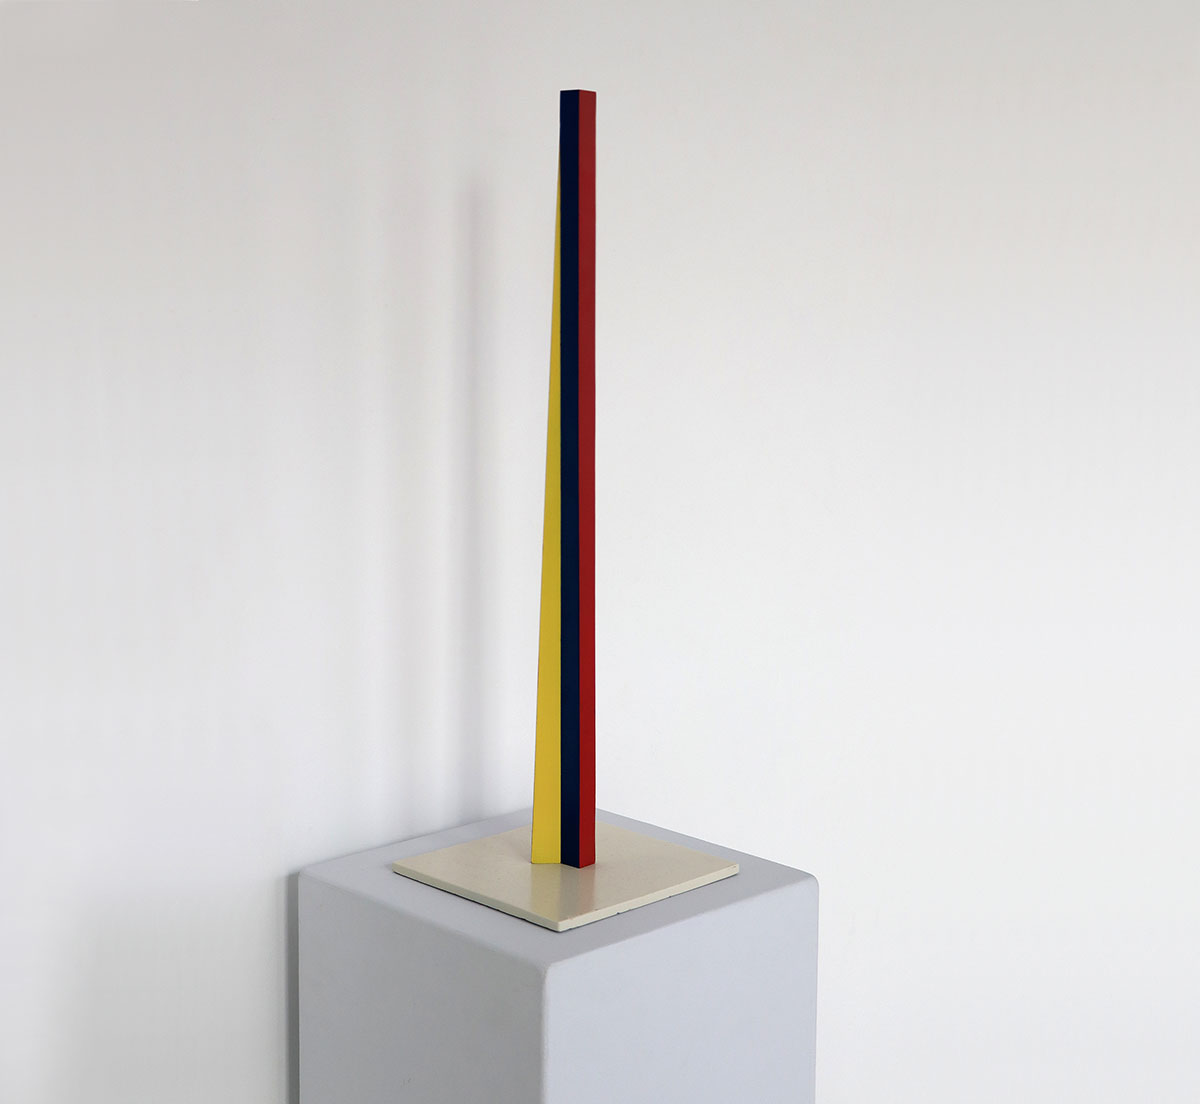 Eckverschiebung, 198960,5 x 3,7 x 3,7 cm; pedestal 0,5 x 20 x 19,7 cmAluminium, painteded: 4/5